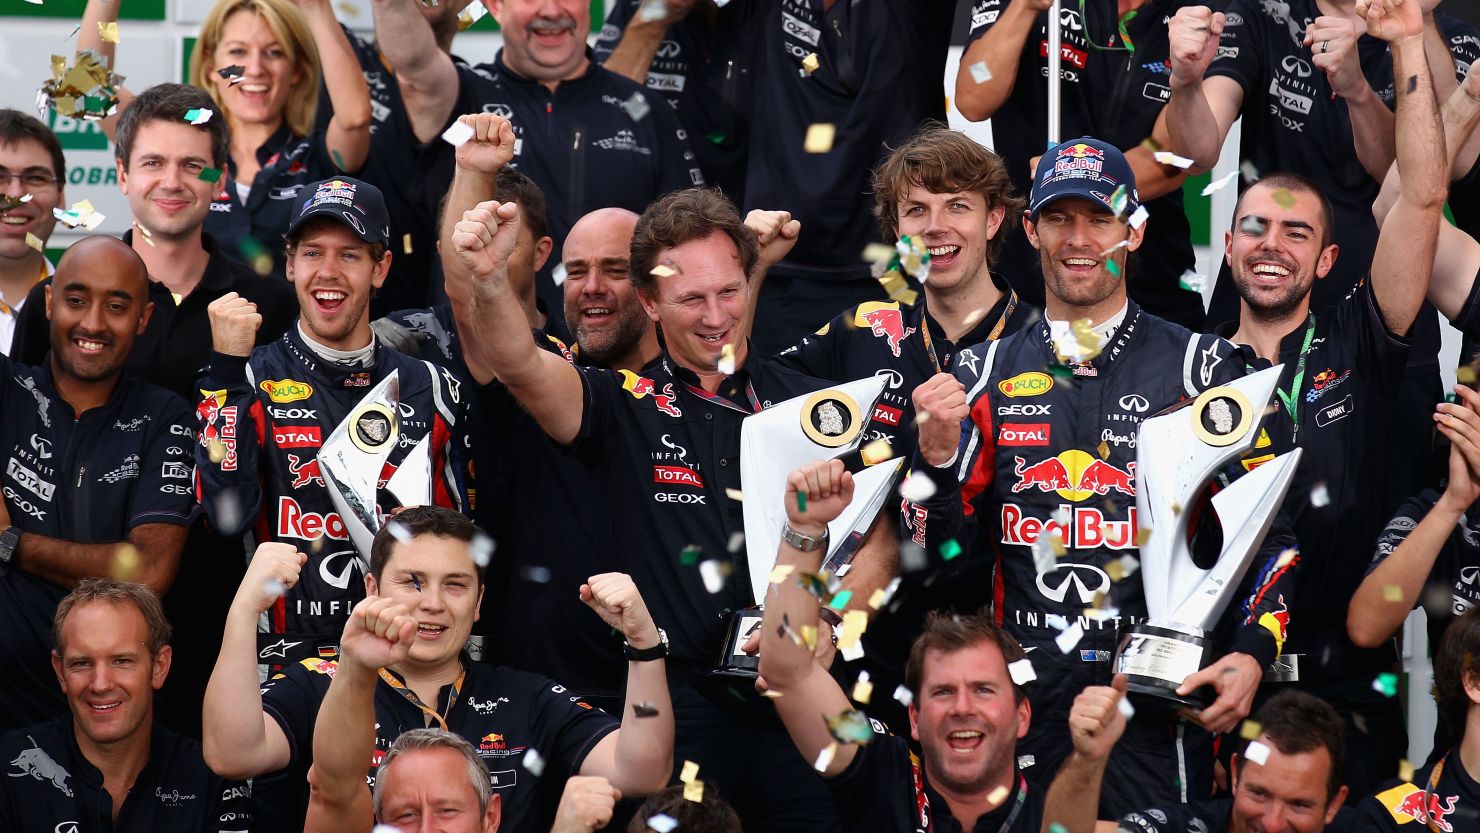 World champion Sebastian Vettel and Brazil GP winner Mark Webber celebrate their 2011 success.